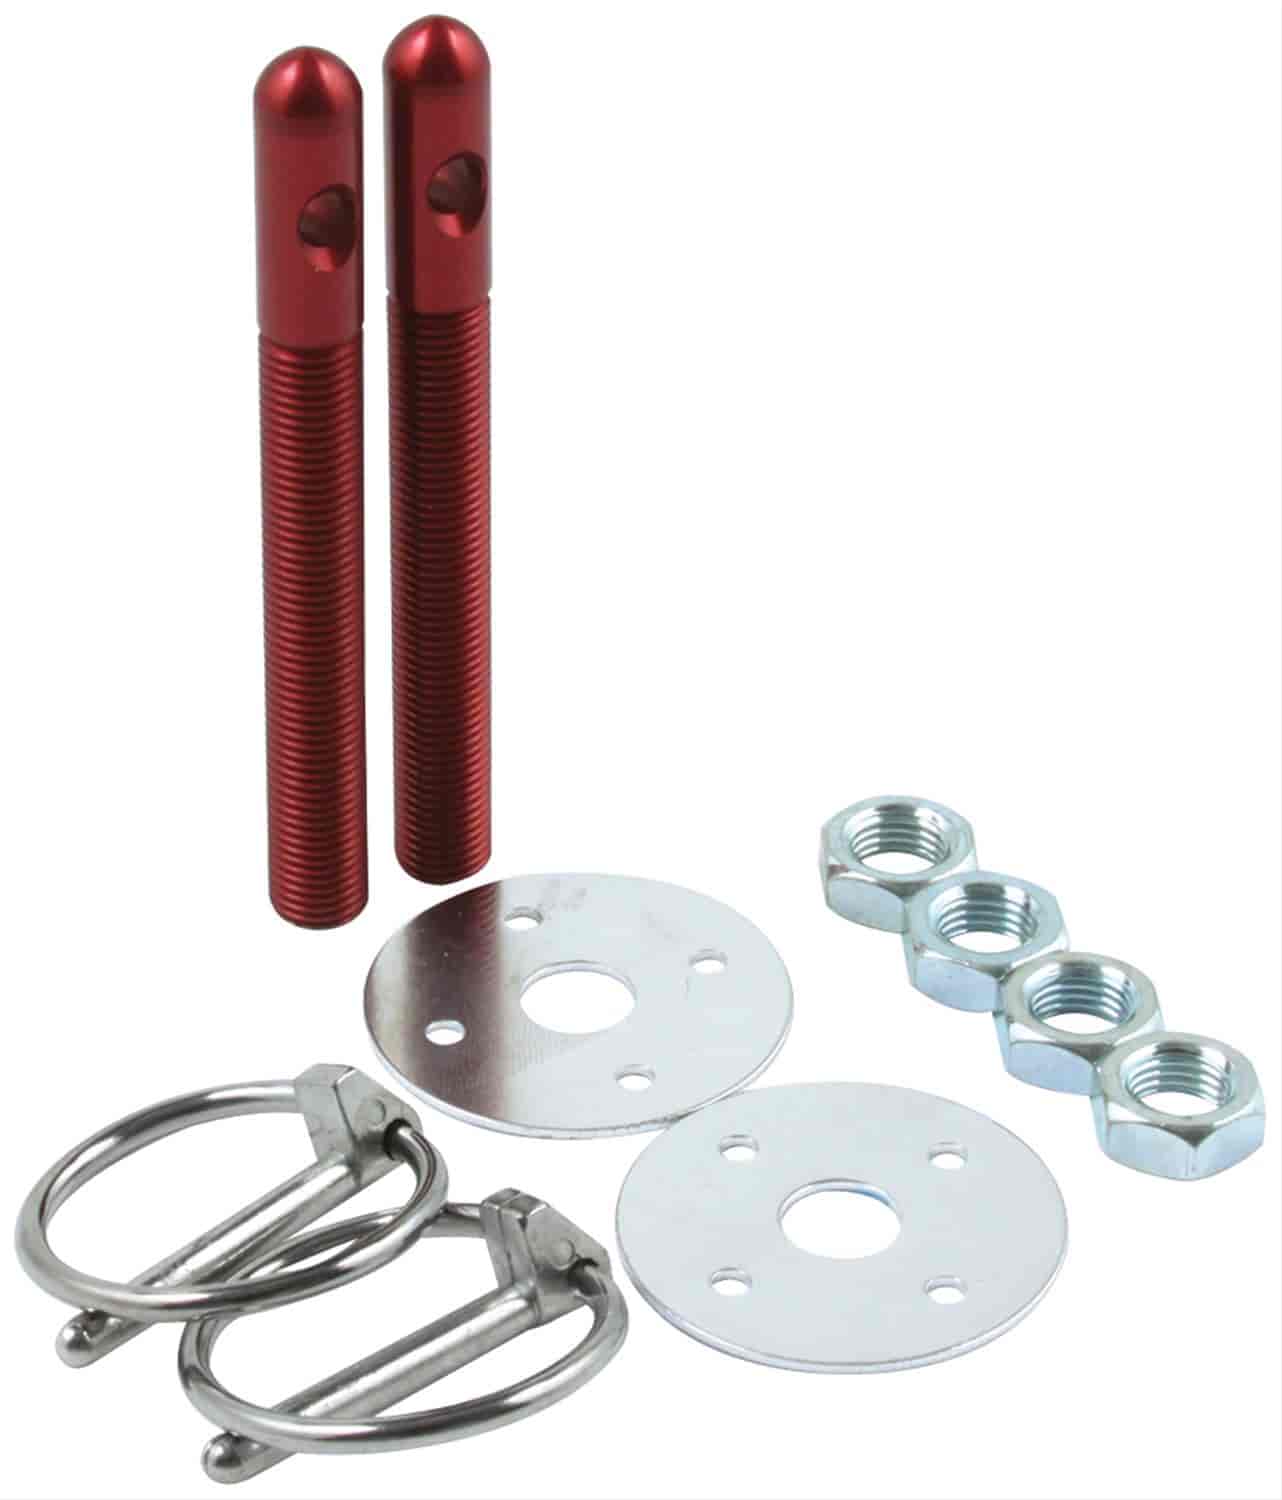 Aluminum Hood Pin Kit 3/8" Kit Red Anodized